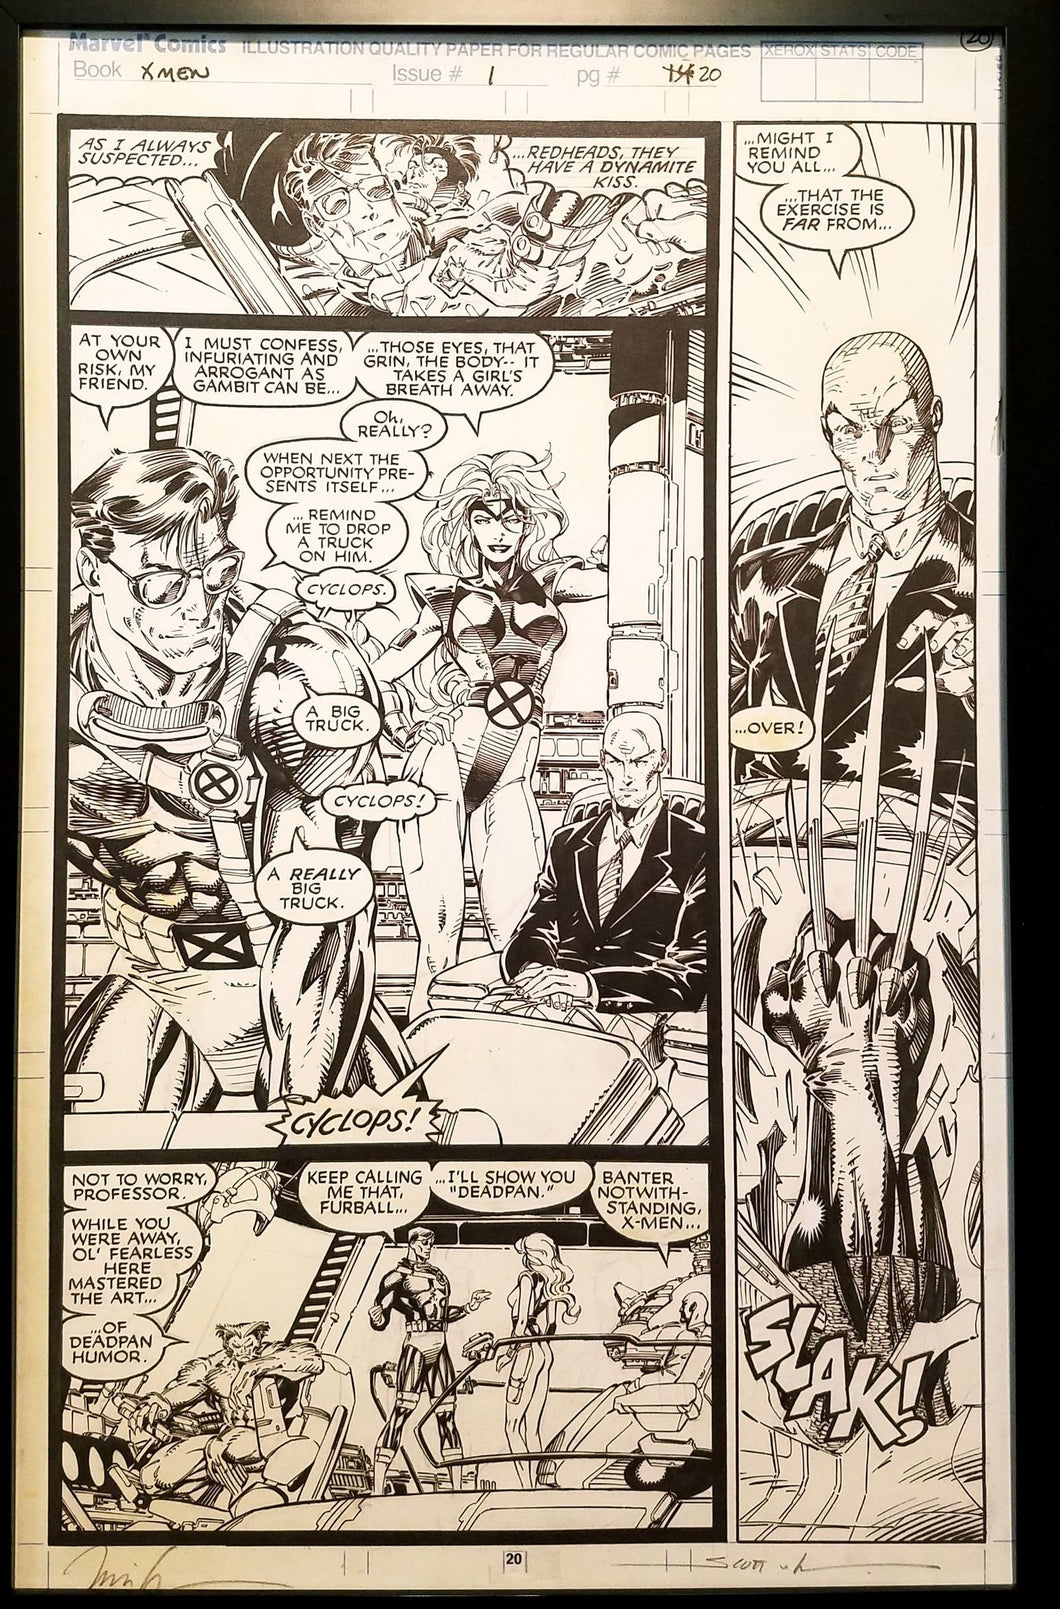 X-Men #1 pg. 20 Cyclops Jim Lee 11x17 FRAMED Original Art Poster Marvel Comics